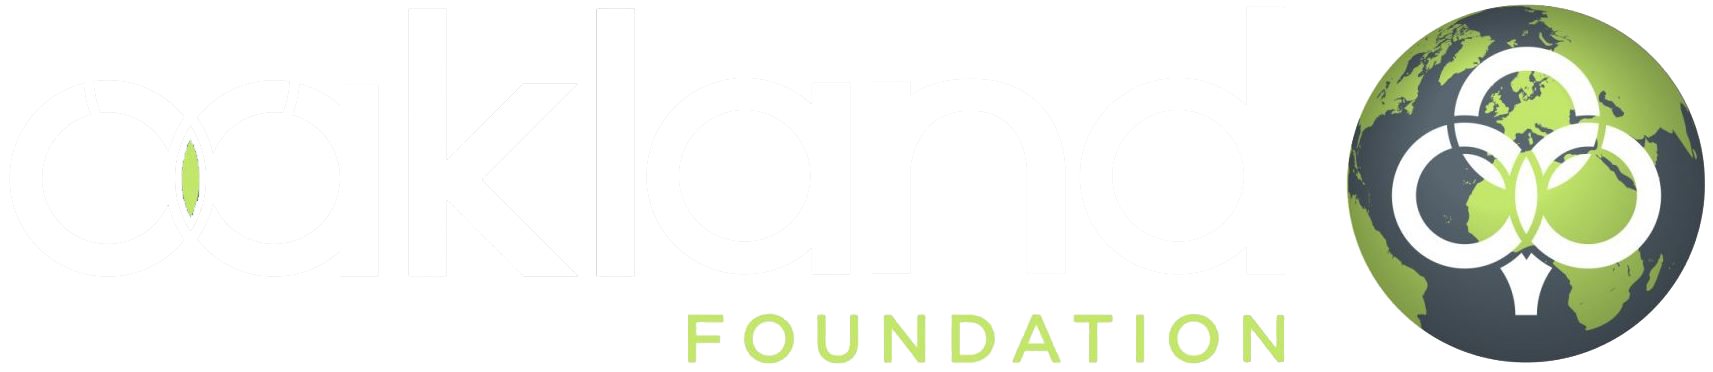 Oakland-Foundation-Logo-On-Dark